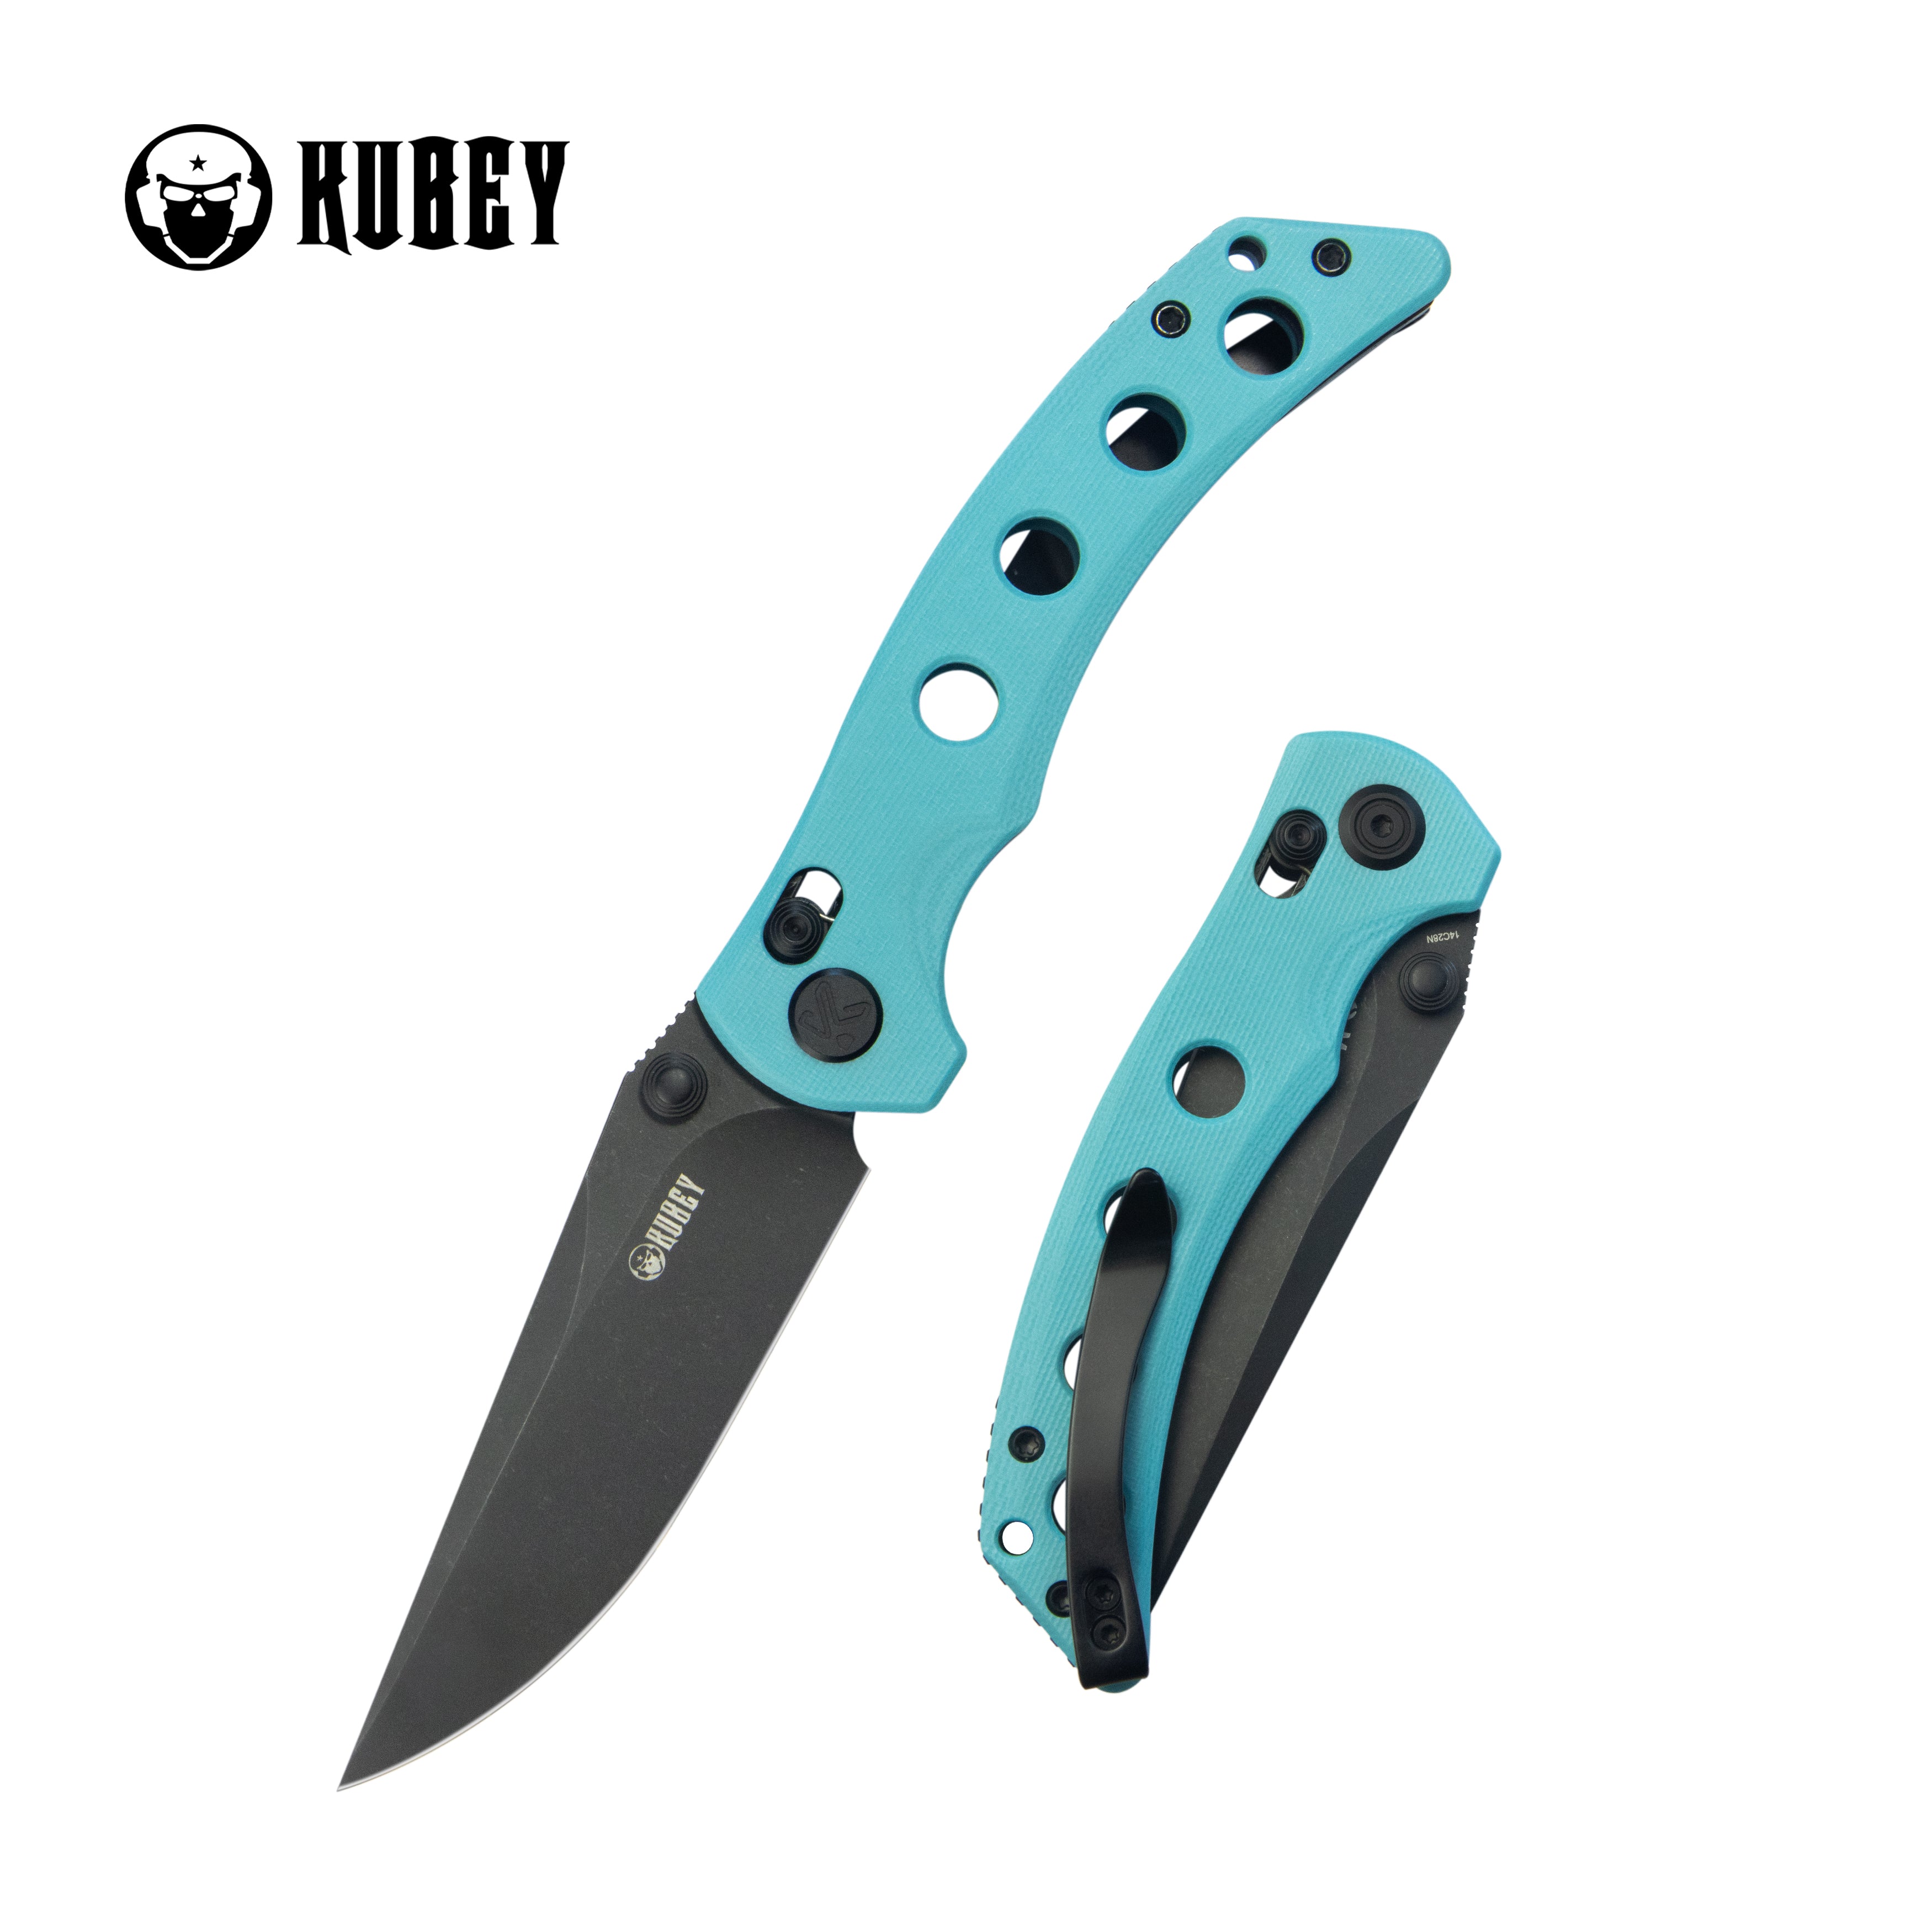 Hound Crossbar Lock Folding Pocket Knife Tiffany Blue G-10 Handle 3.43" Blackwash 14C28N Blade KU172D